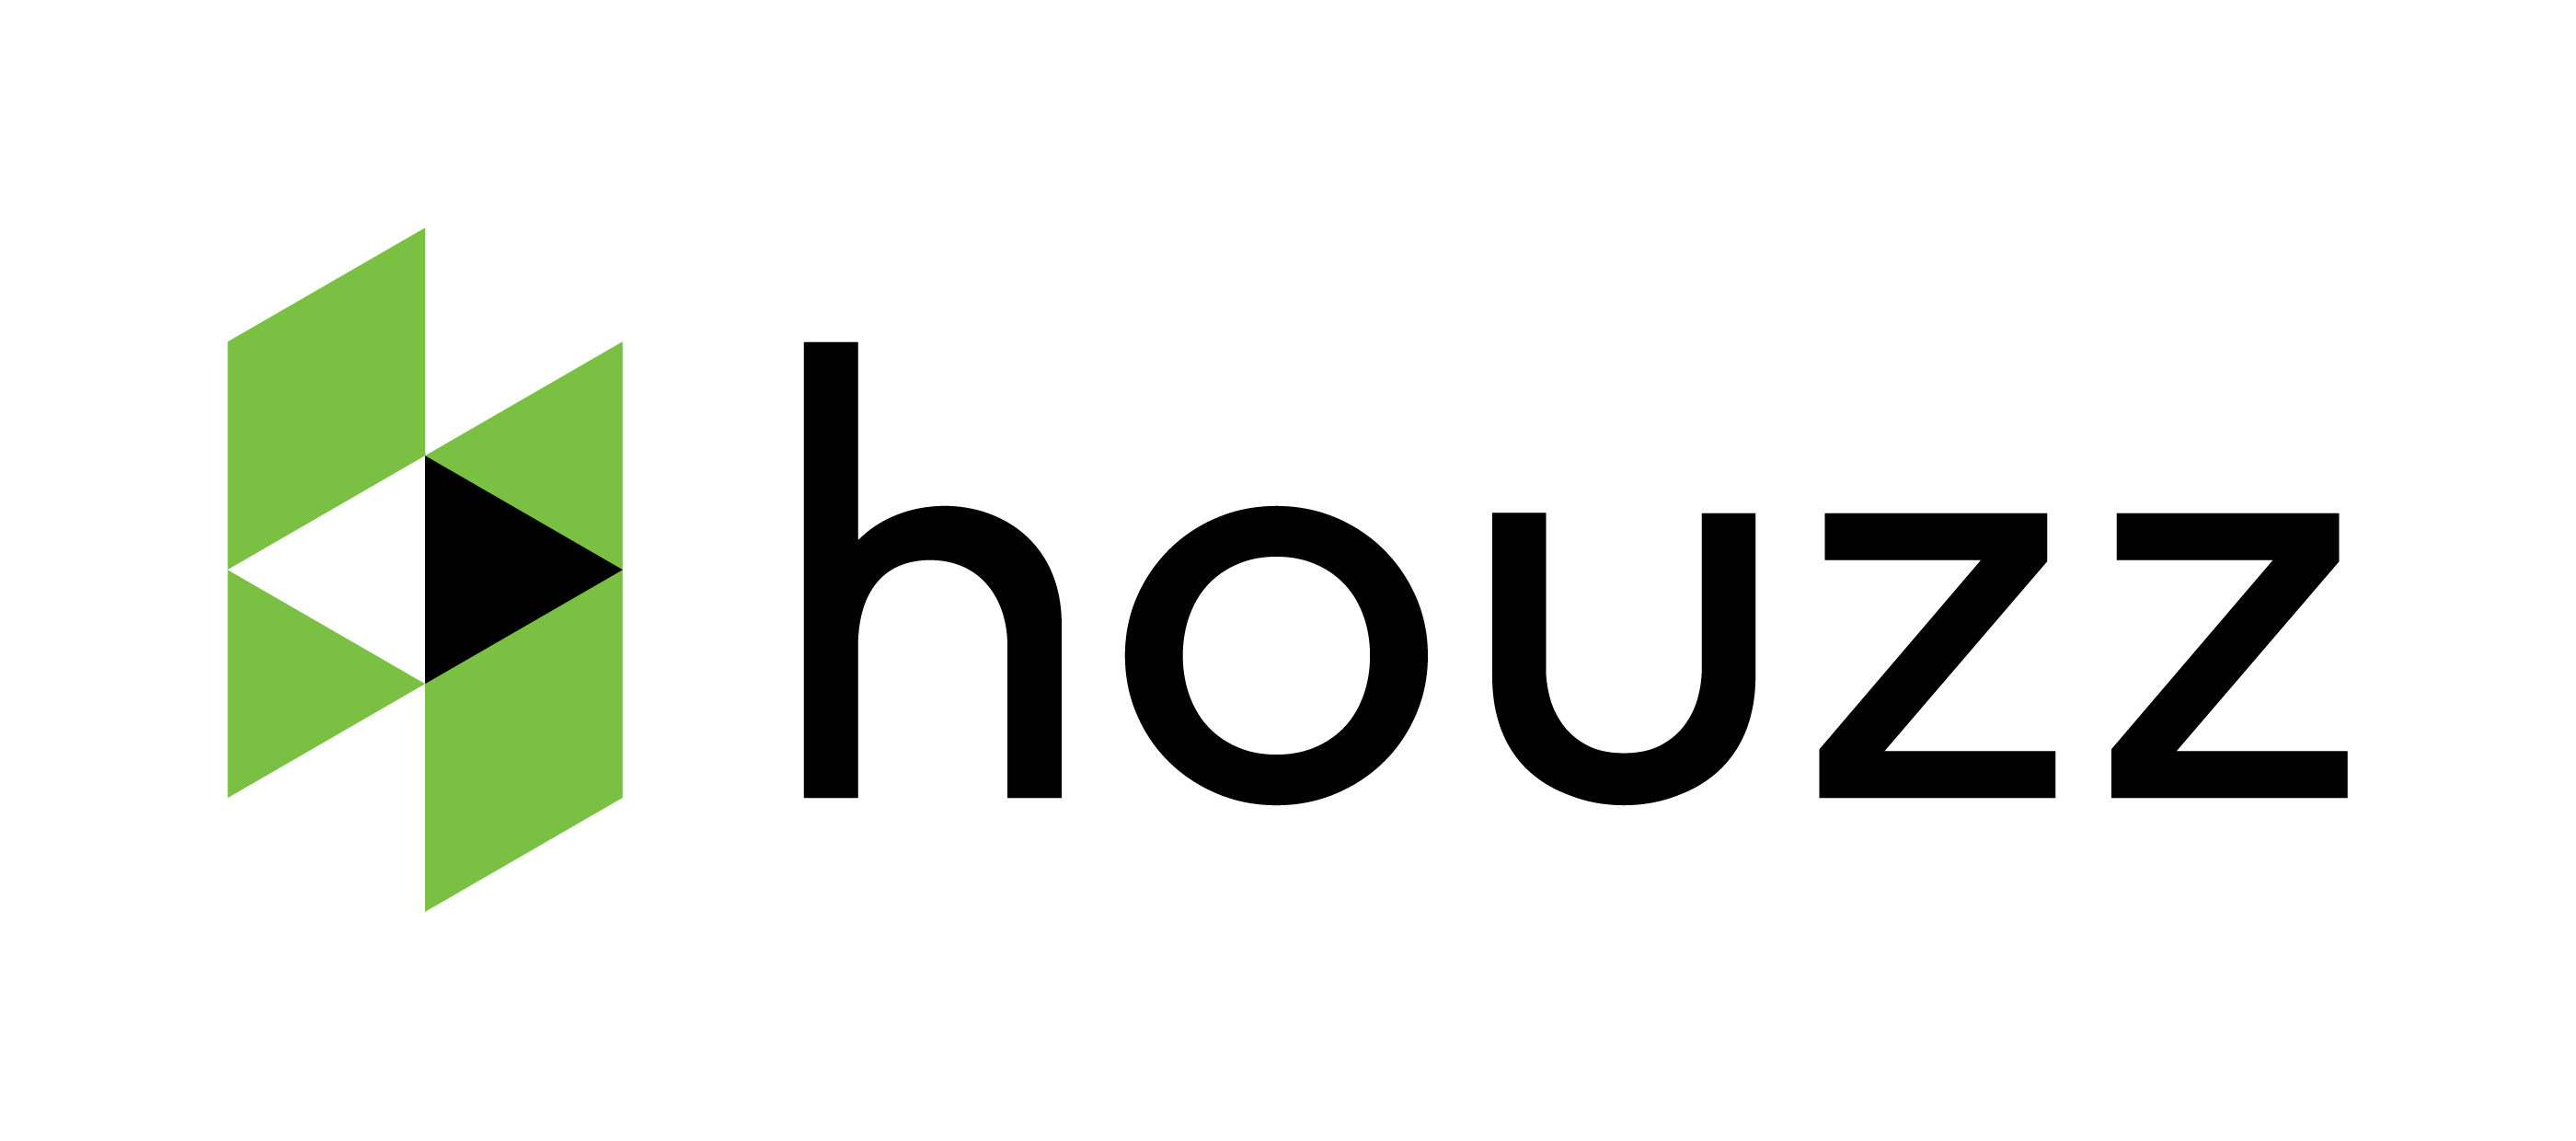 Houzz App Logo - Houzz PNG Transparent Houzz PNG Image